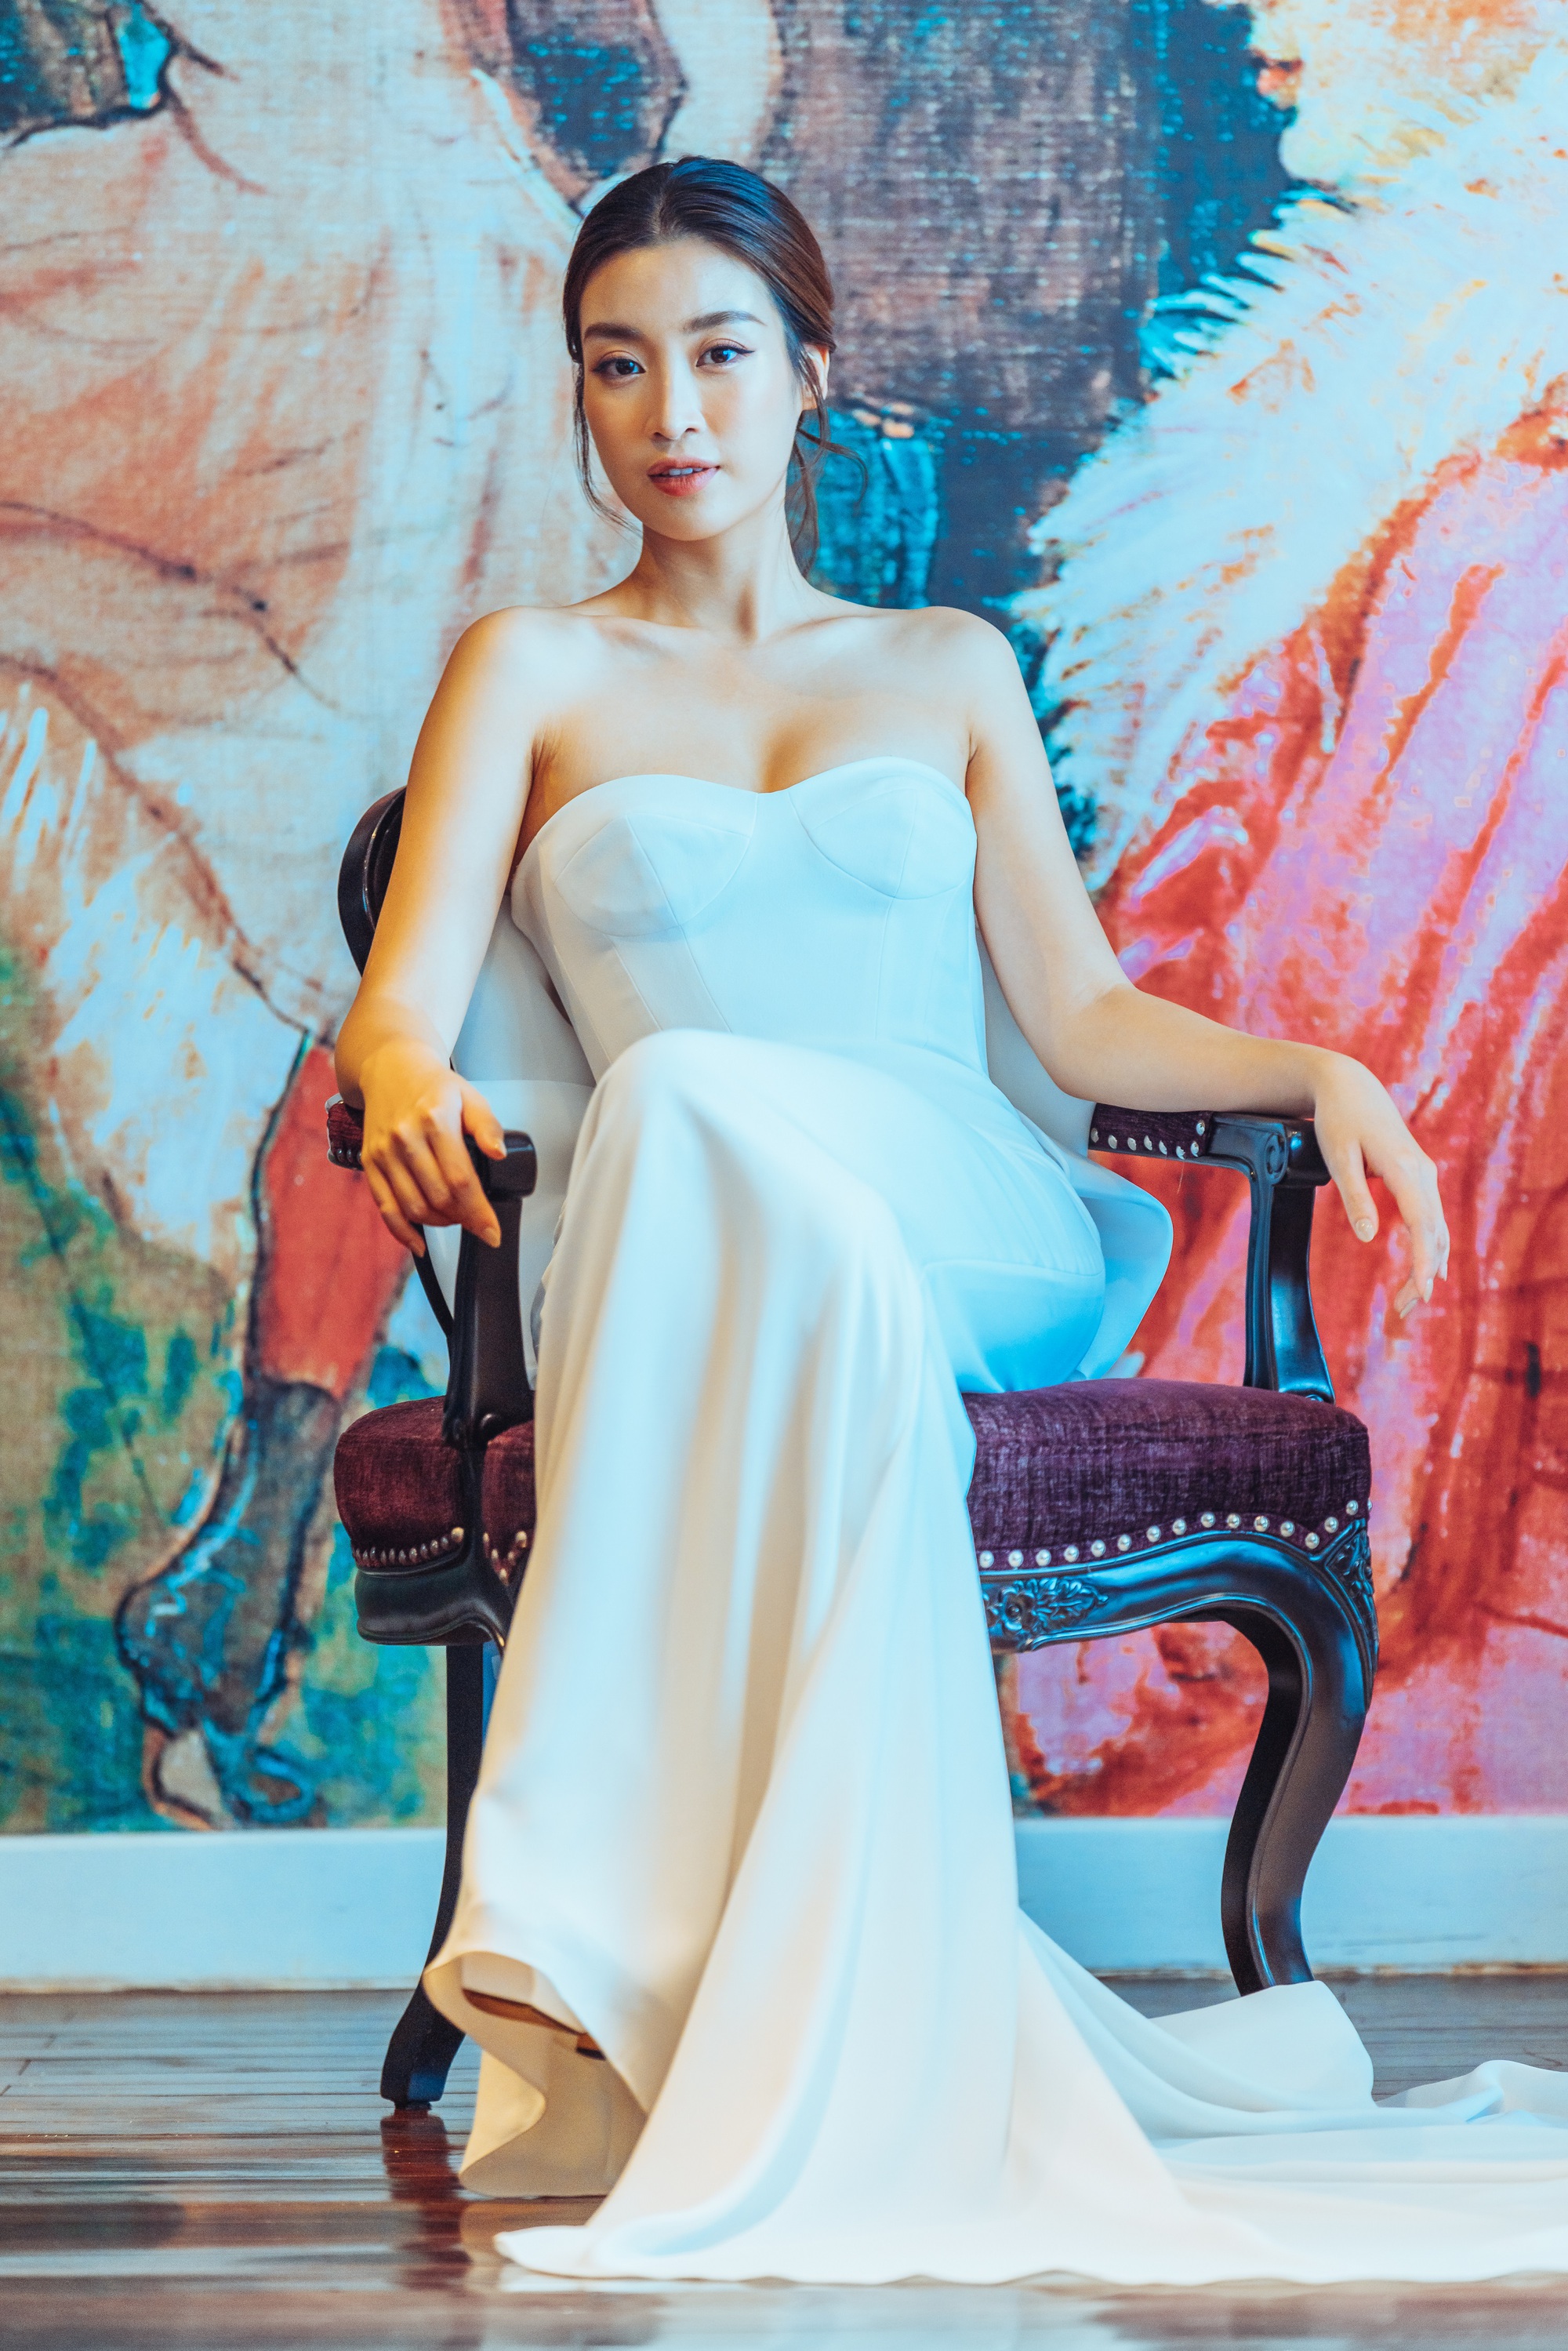 Hoa hậu Đỗ Mỹ Linh mặc váy cưới xinh đẹp khiến phụ nữ cũng phải rung động trước ngày lấy chồng - Ảnh 2.